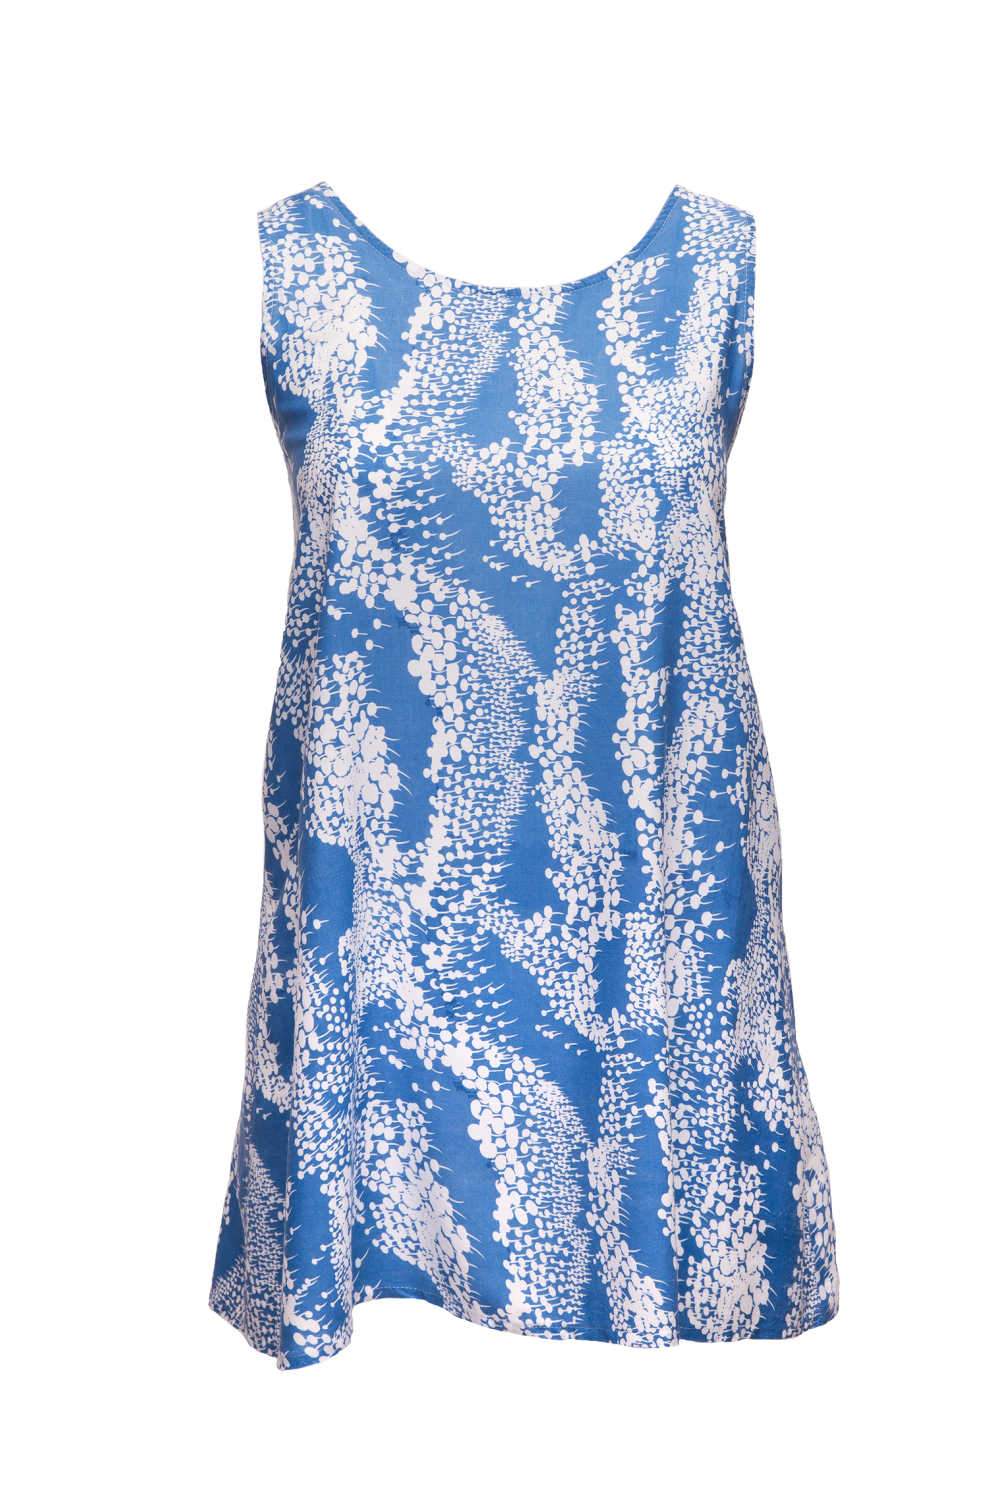 short-summer-dress-white-blue-floral-design